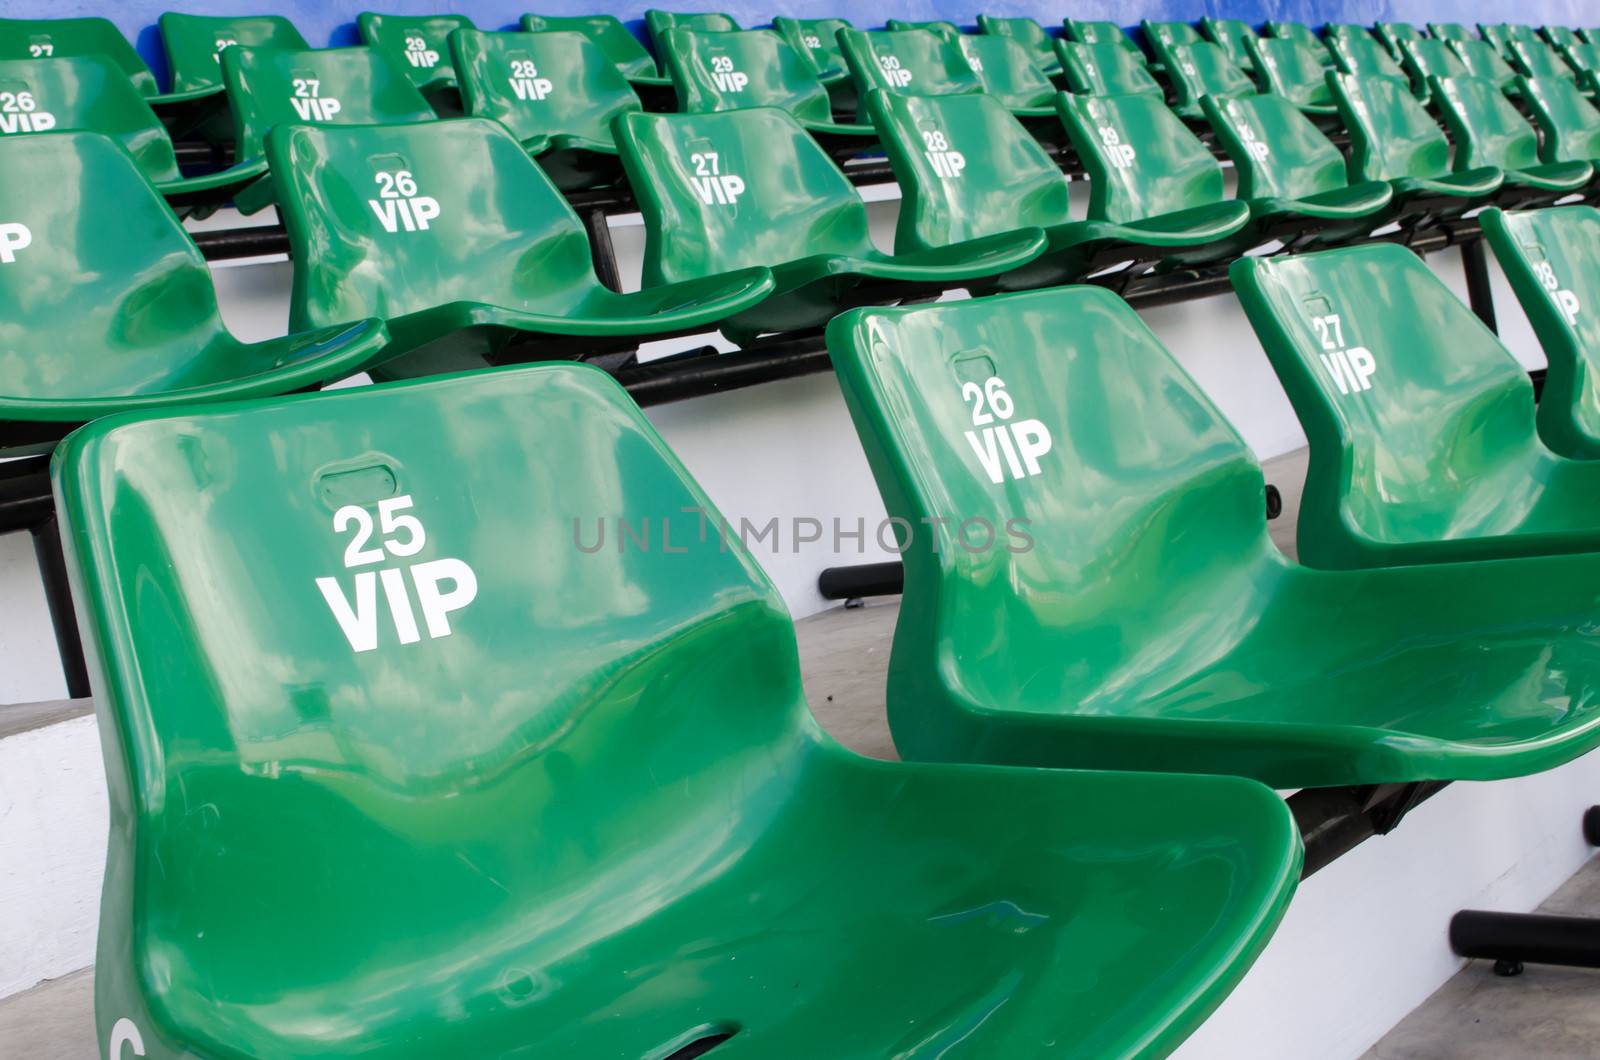 green football Stadium seats 